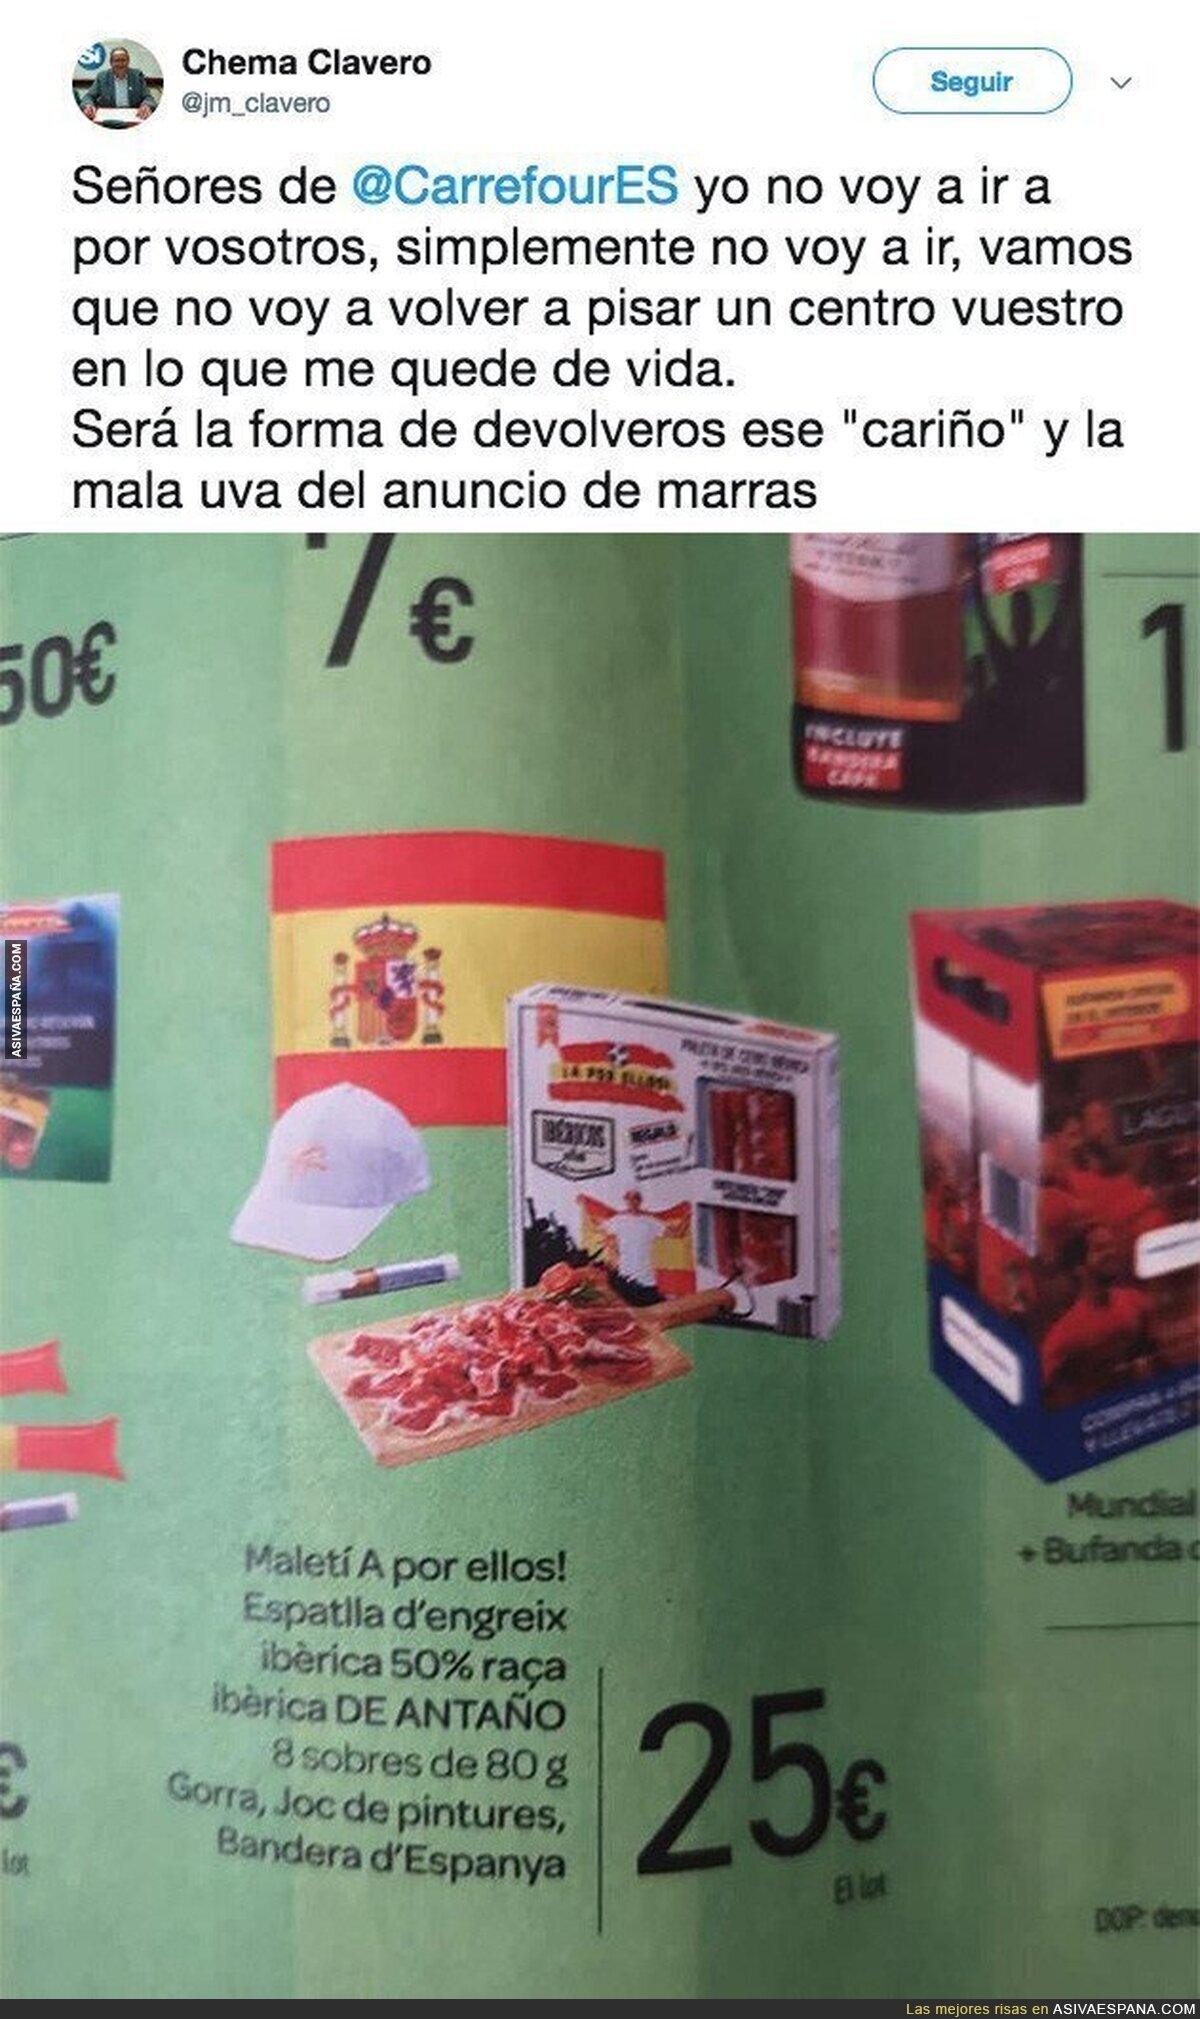 Independentistas catalanes empiezan boicot a Carrefour por el lamentable nombre que han usado para este pack españolista